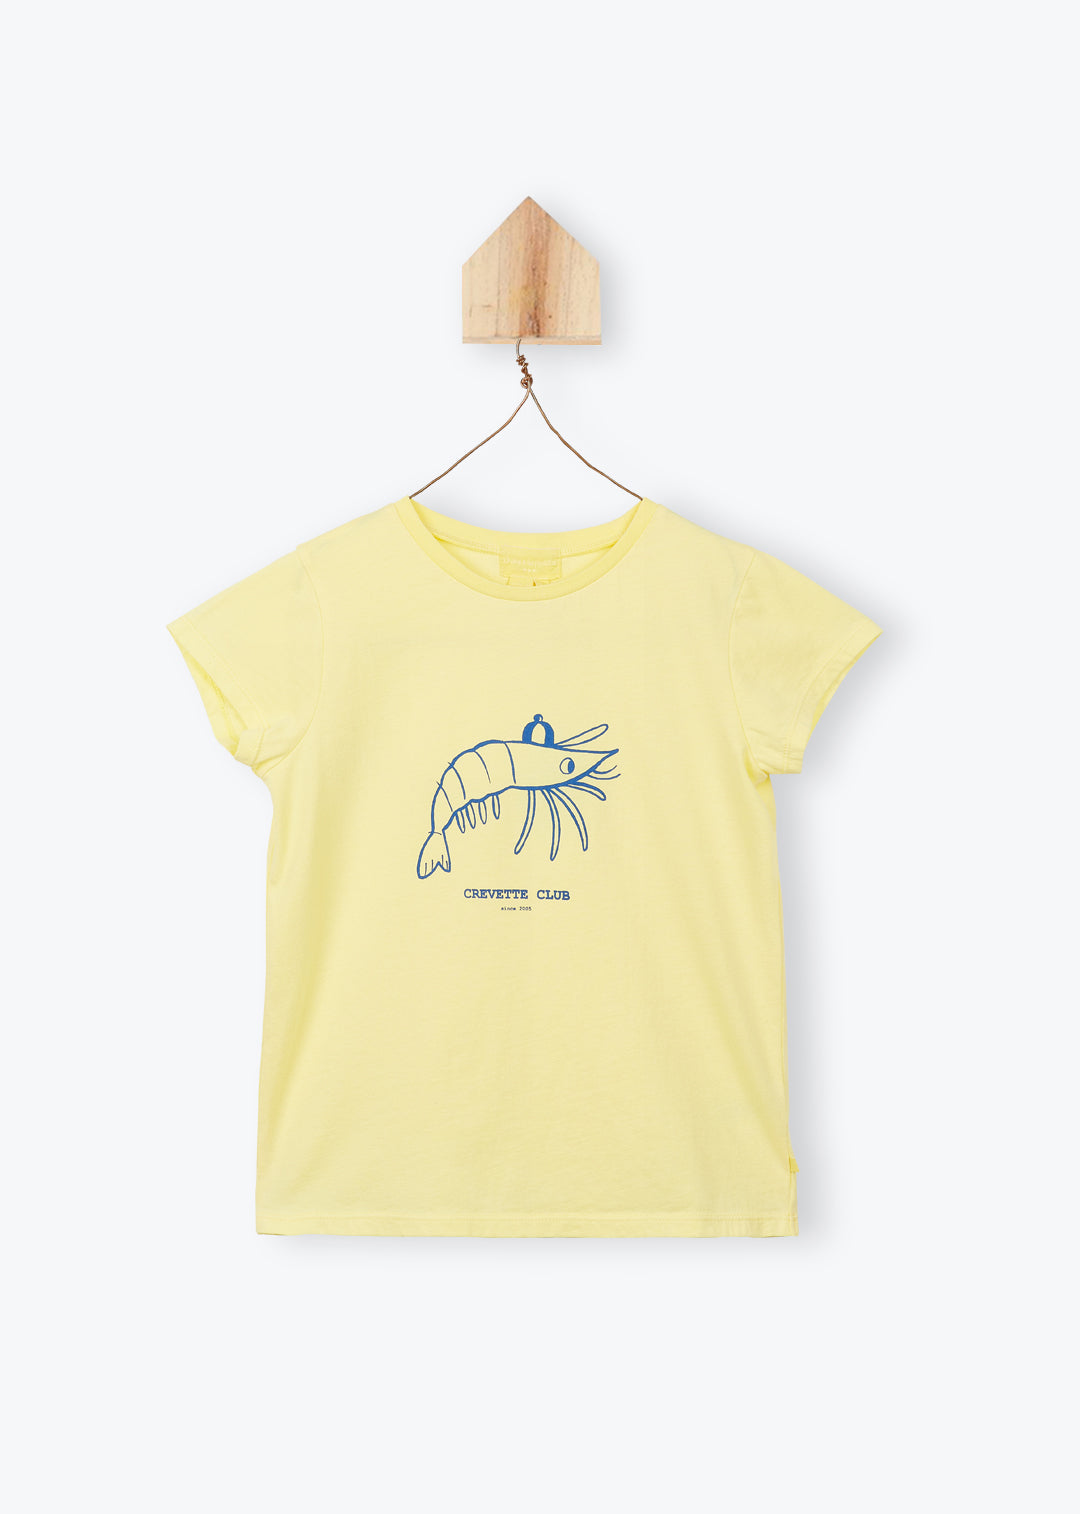 T-Shirt Shrimp Club - قميص